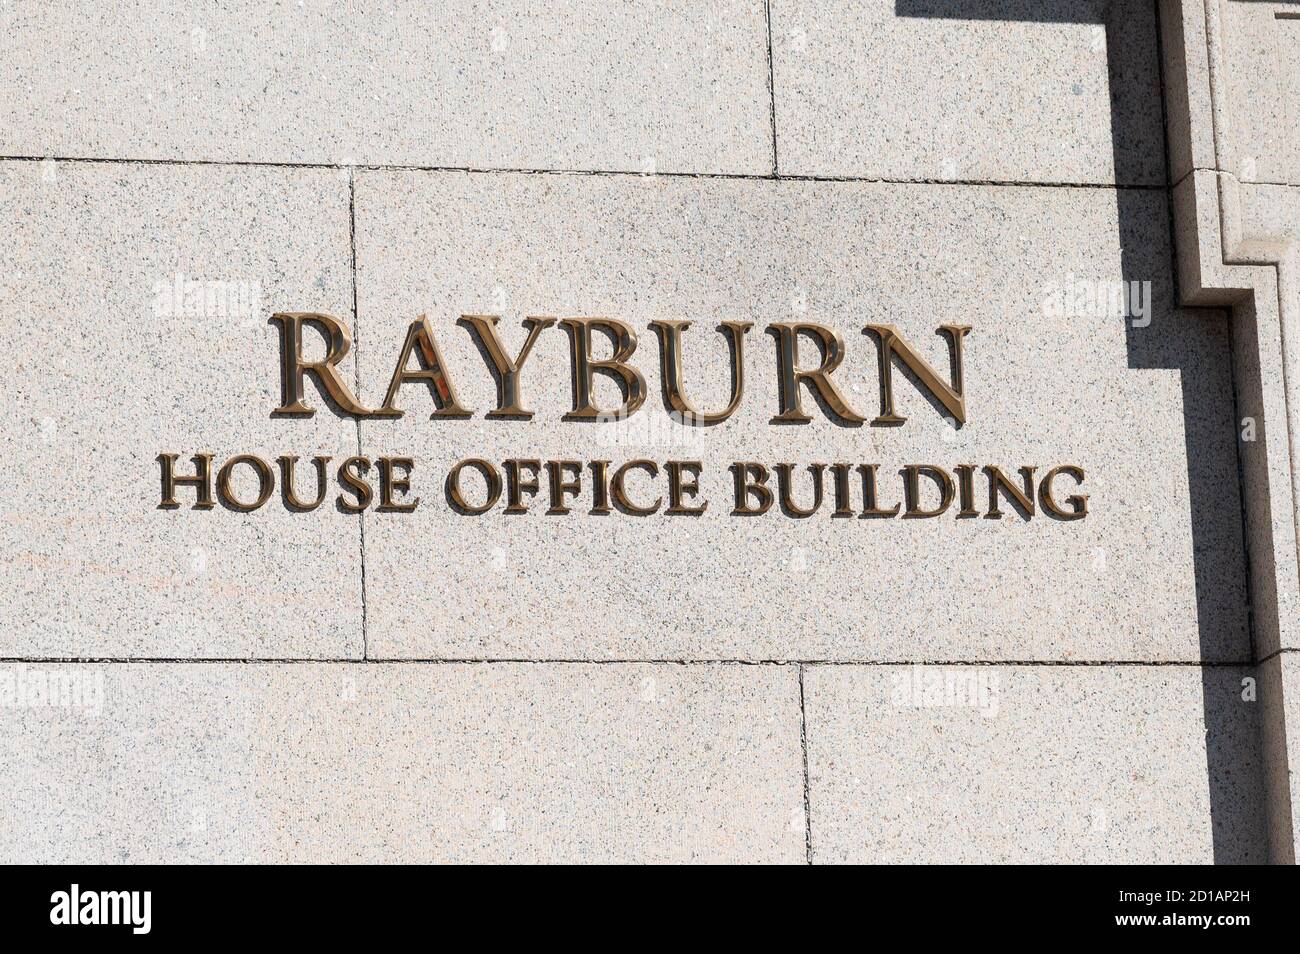 Washington, USA 05. Oktober 2020. 5. Oktober 2020 - Washington, DC, USA: Das Bürogebäude des Rayburn House befindet sich in der Nähe des US-Kapitols. (Foto: Michael Brochstein/Sipa USA) Quelle: SIPA USA/Alamy Live News Stockfoto